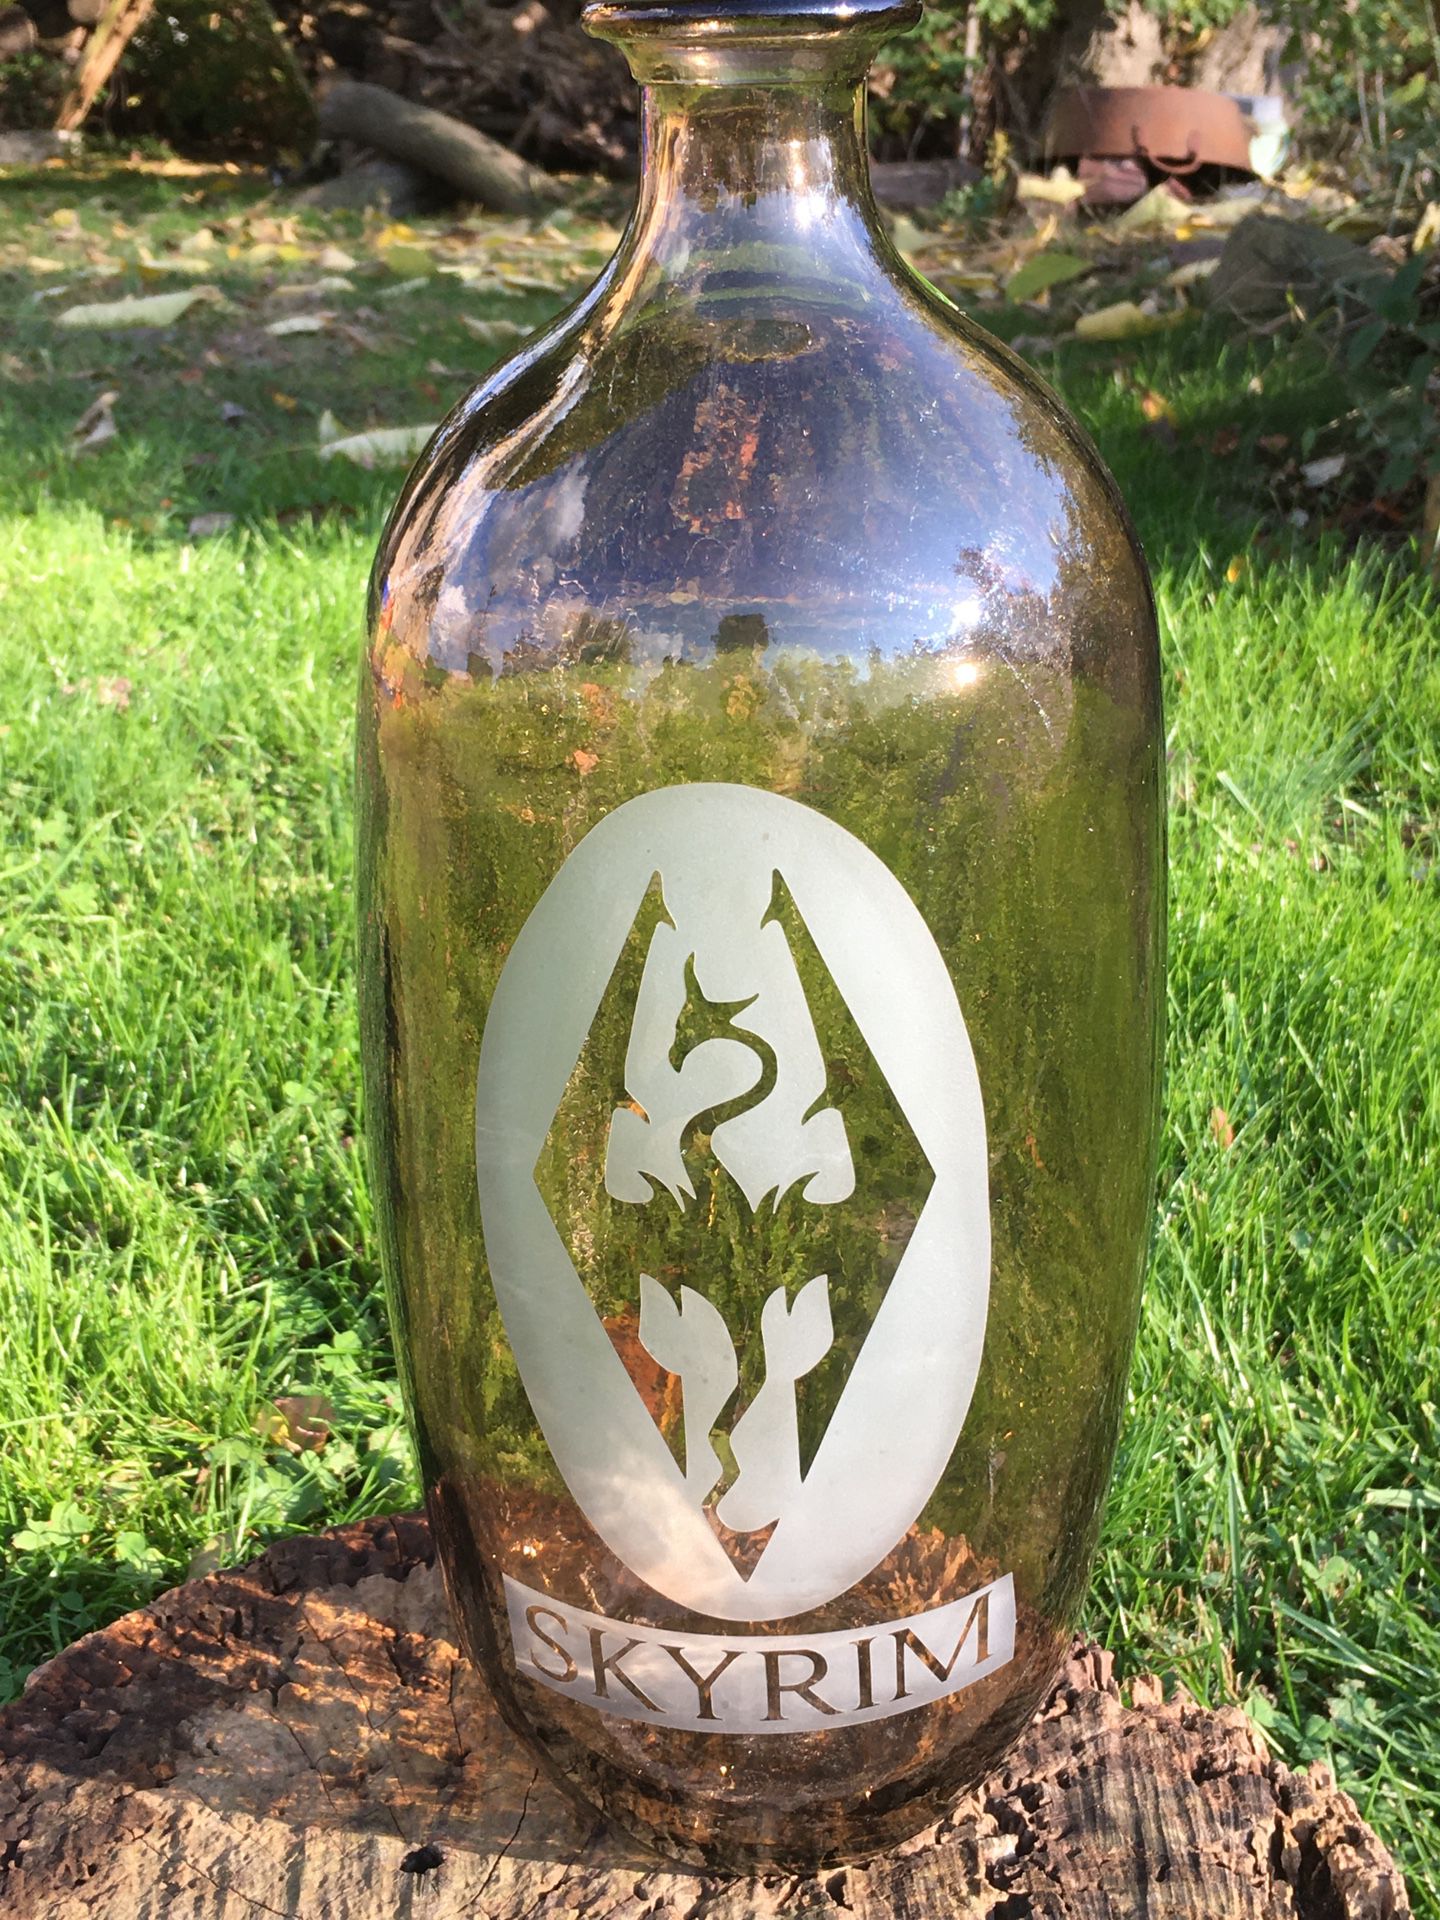 Skyrim Huge Etched Glass Bottle